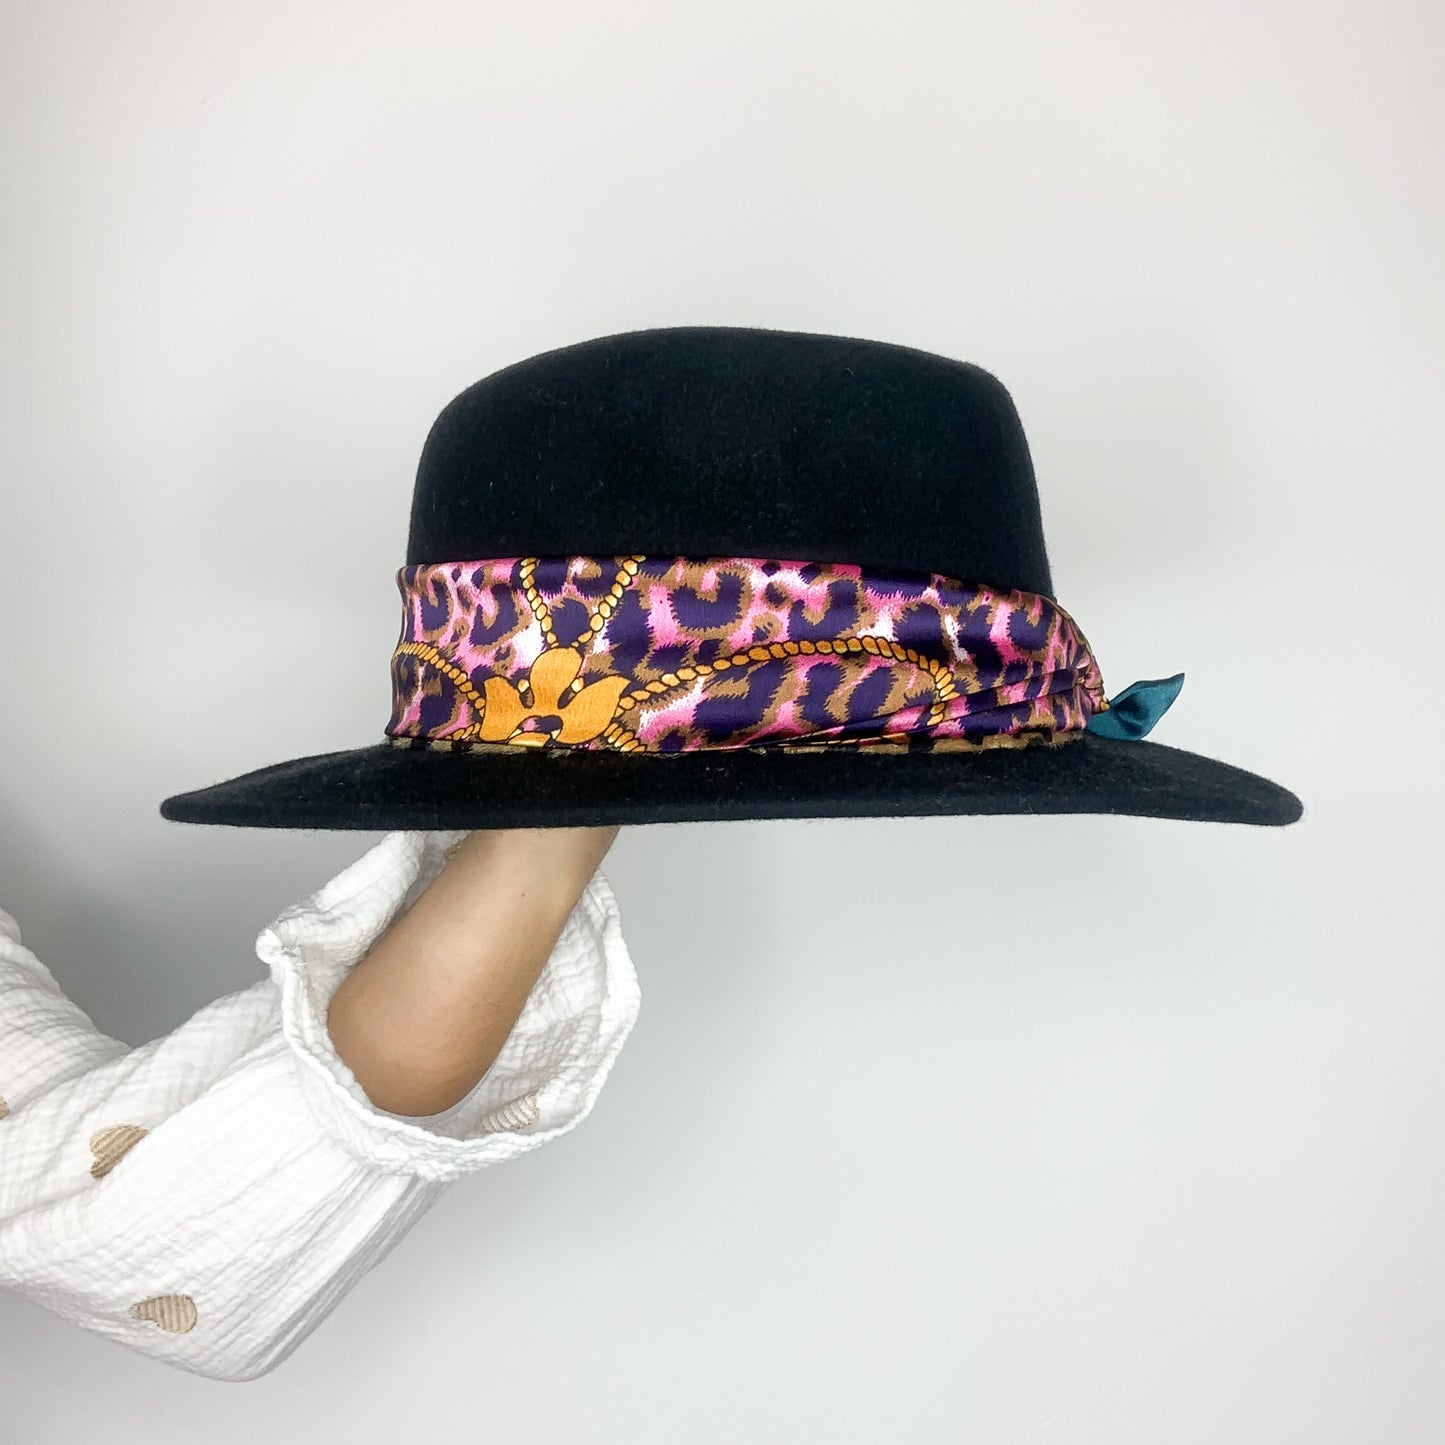 La photo montre un chapeau noir avec un ruban coloré autour de la calotte. Le ruban a un motif animalier avec des taches de couleurs violet, jaune et rose. Le chapeau est posé sur un mannequin ou un support qui a un bras visible vêtu d'une chemise blanche avec des motifs de cœurs marron.